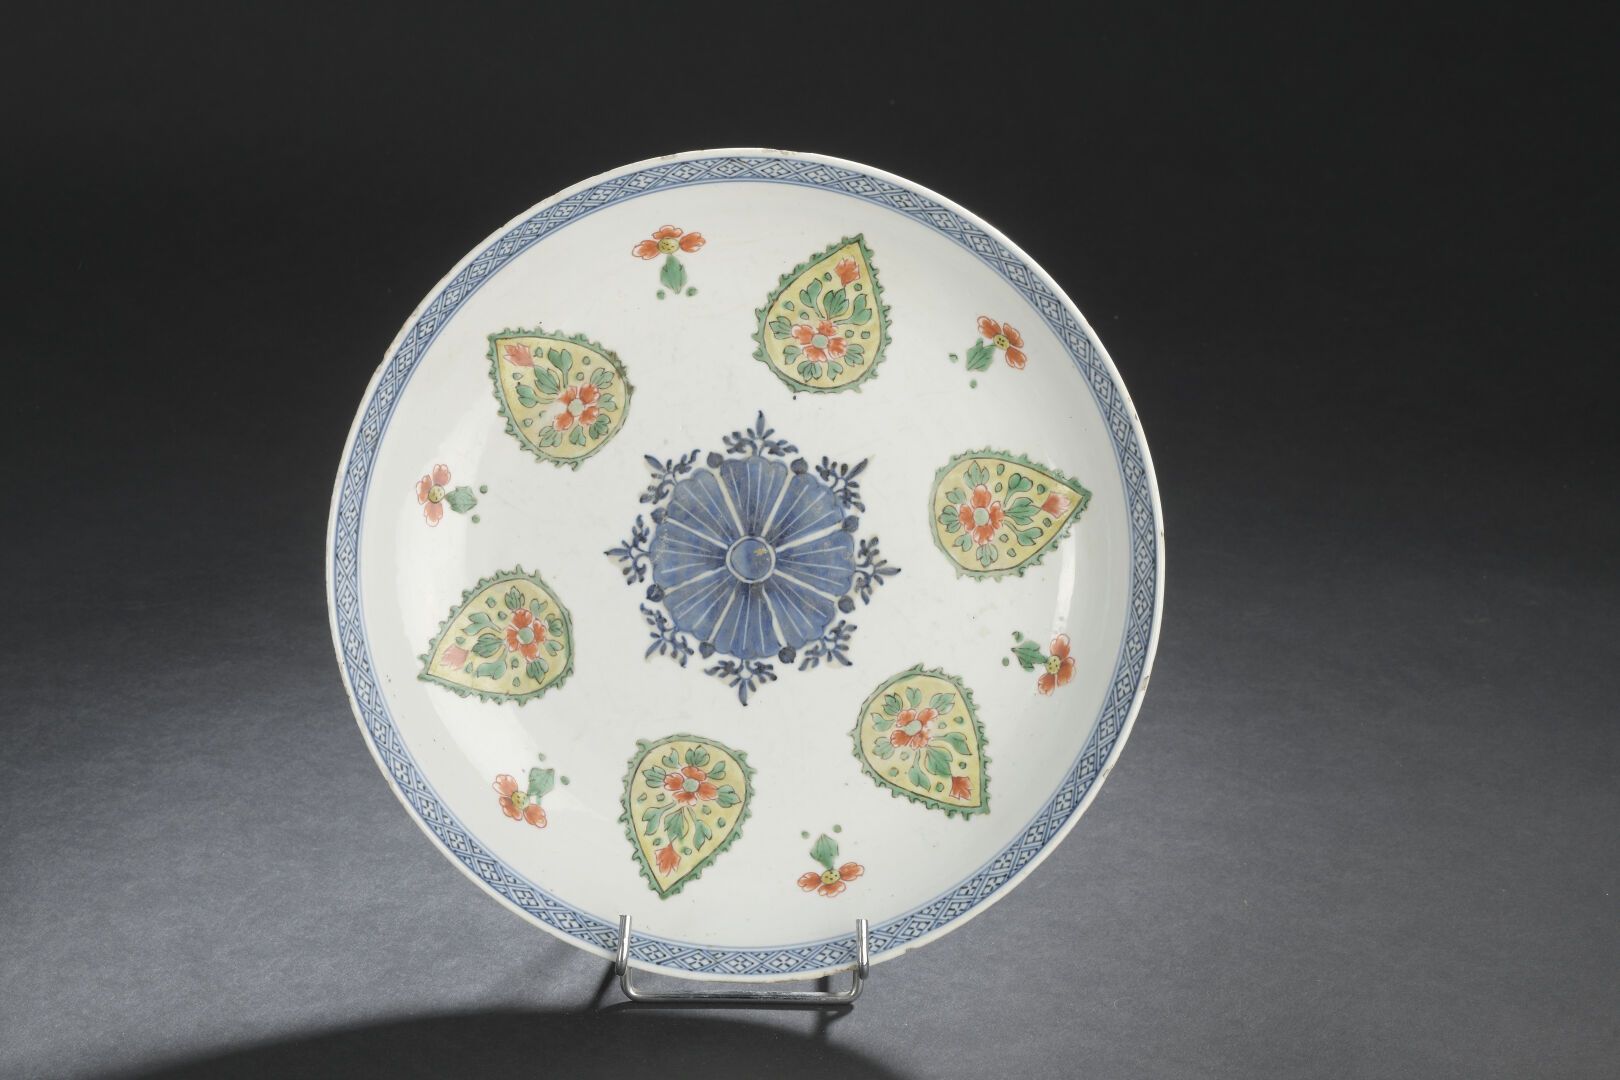 Null 五彩瓷器空心杯
中国，康熙时期 (1662-1722)
中间装饰有一朵风格化的花，周围有花瓣形式的刻痕，花瓣上绘有花和叶子；珐琅质碎片和小片。